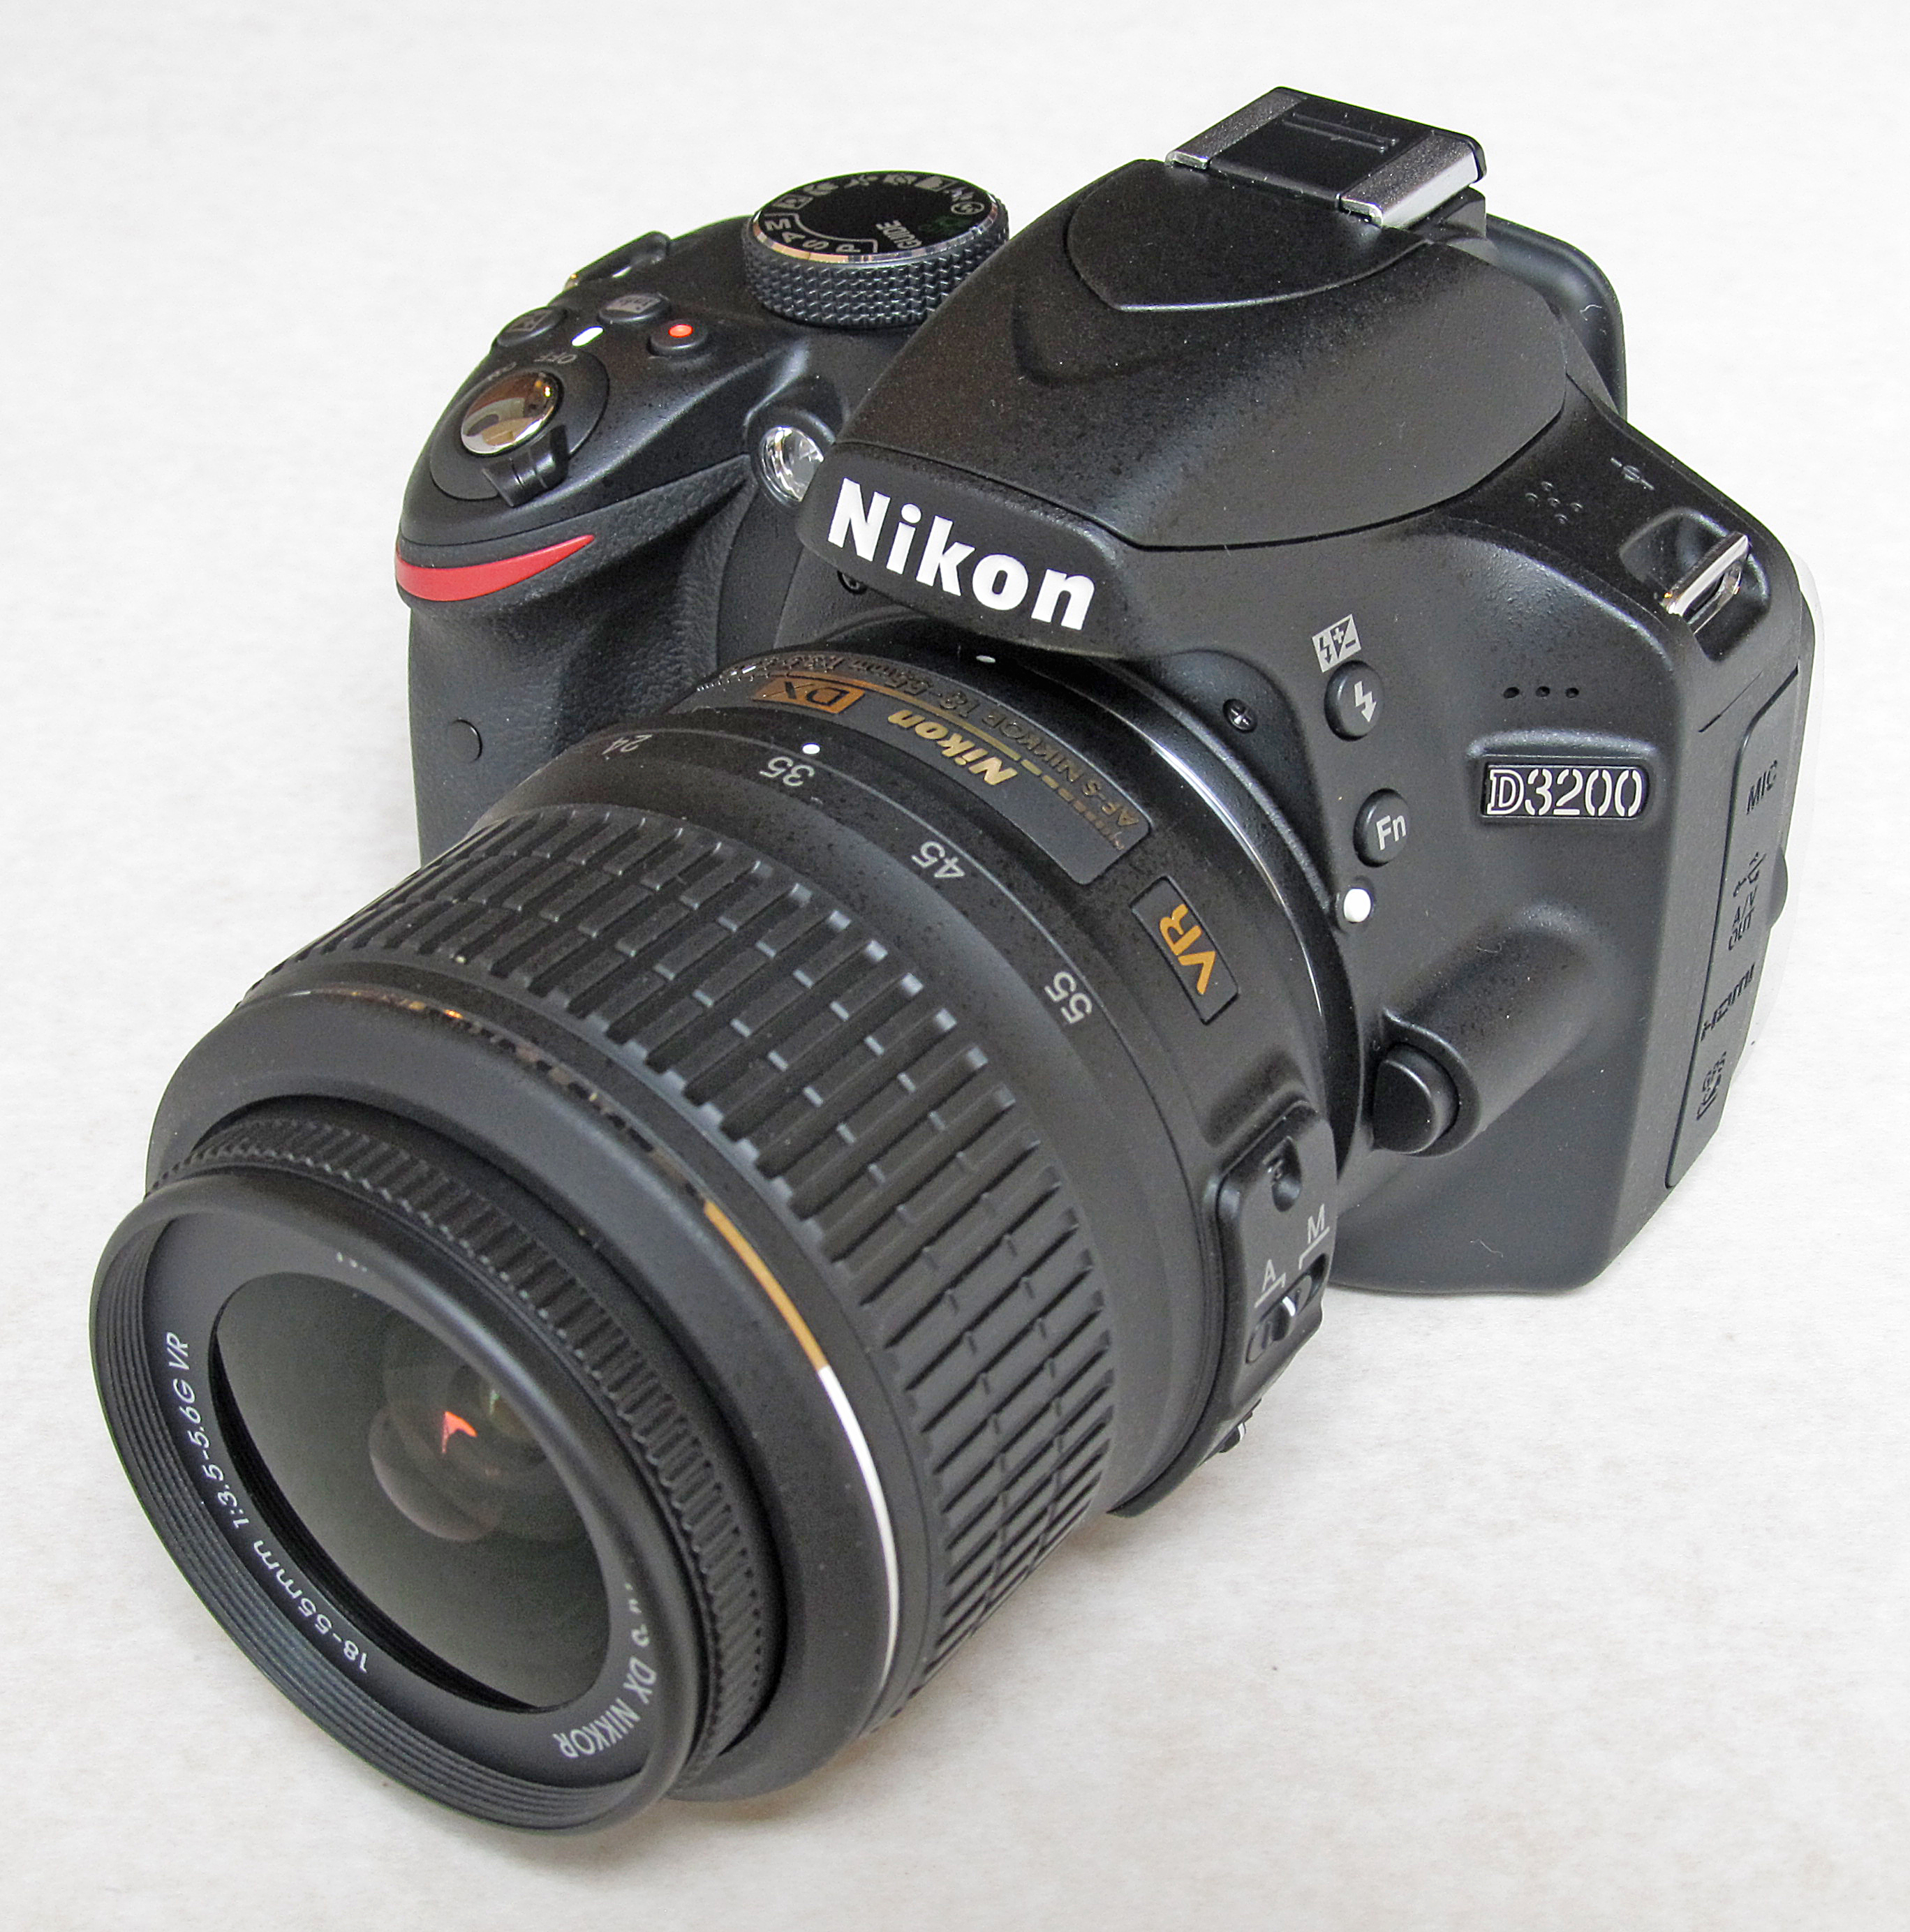 Nikon D3200 - Wikipedia